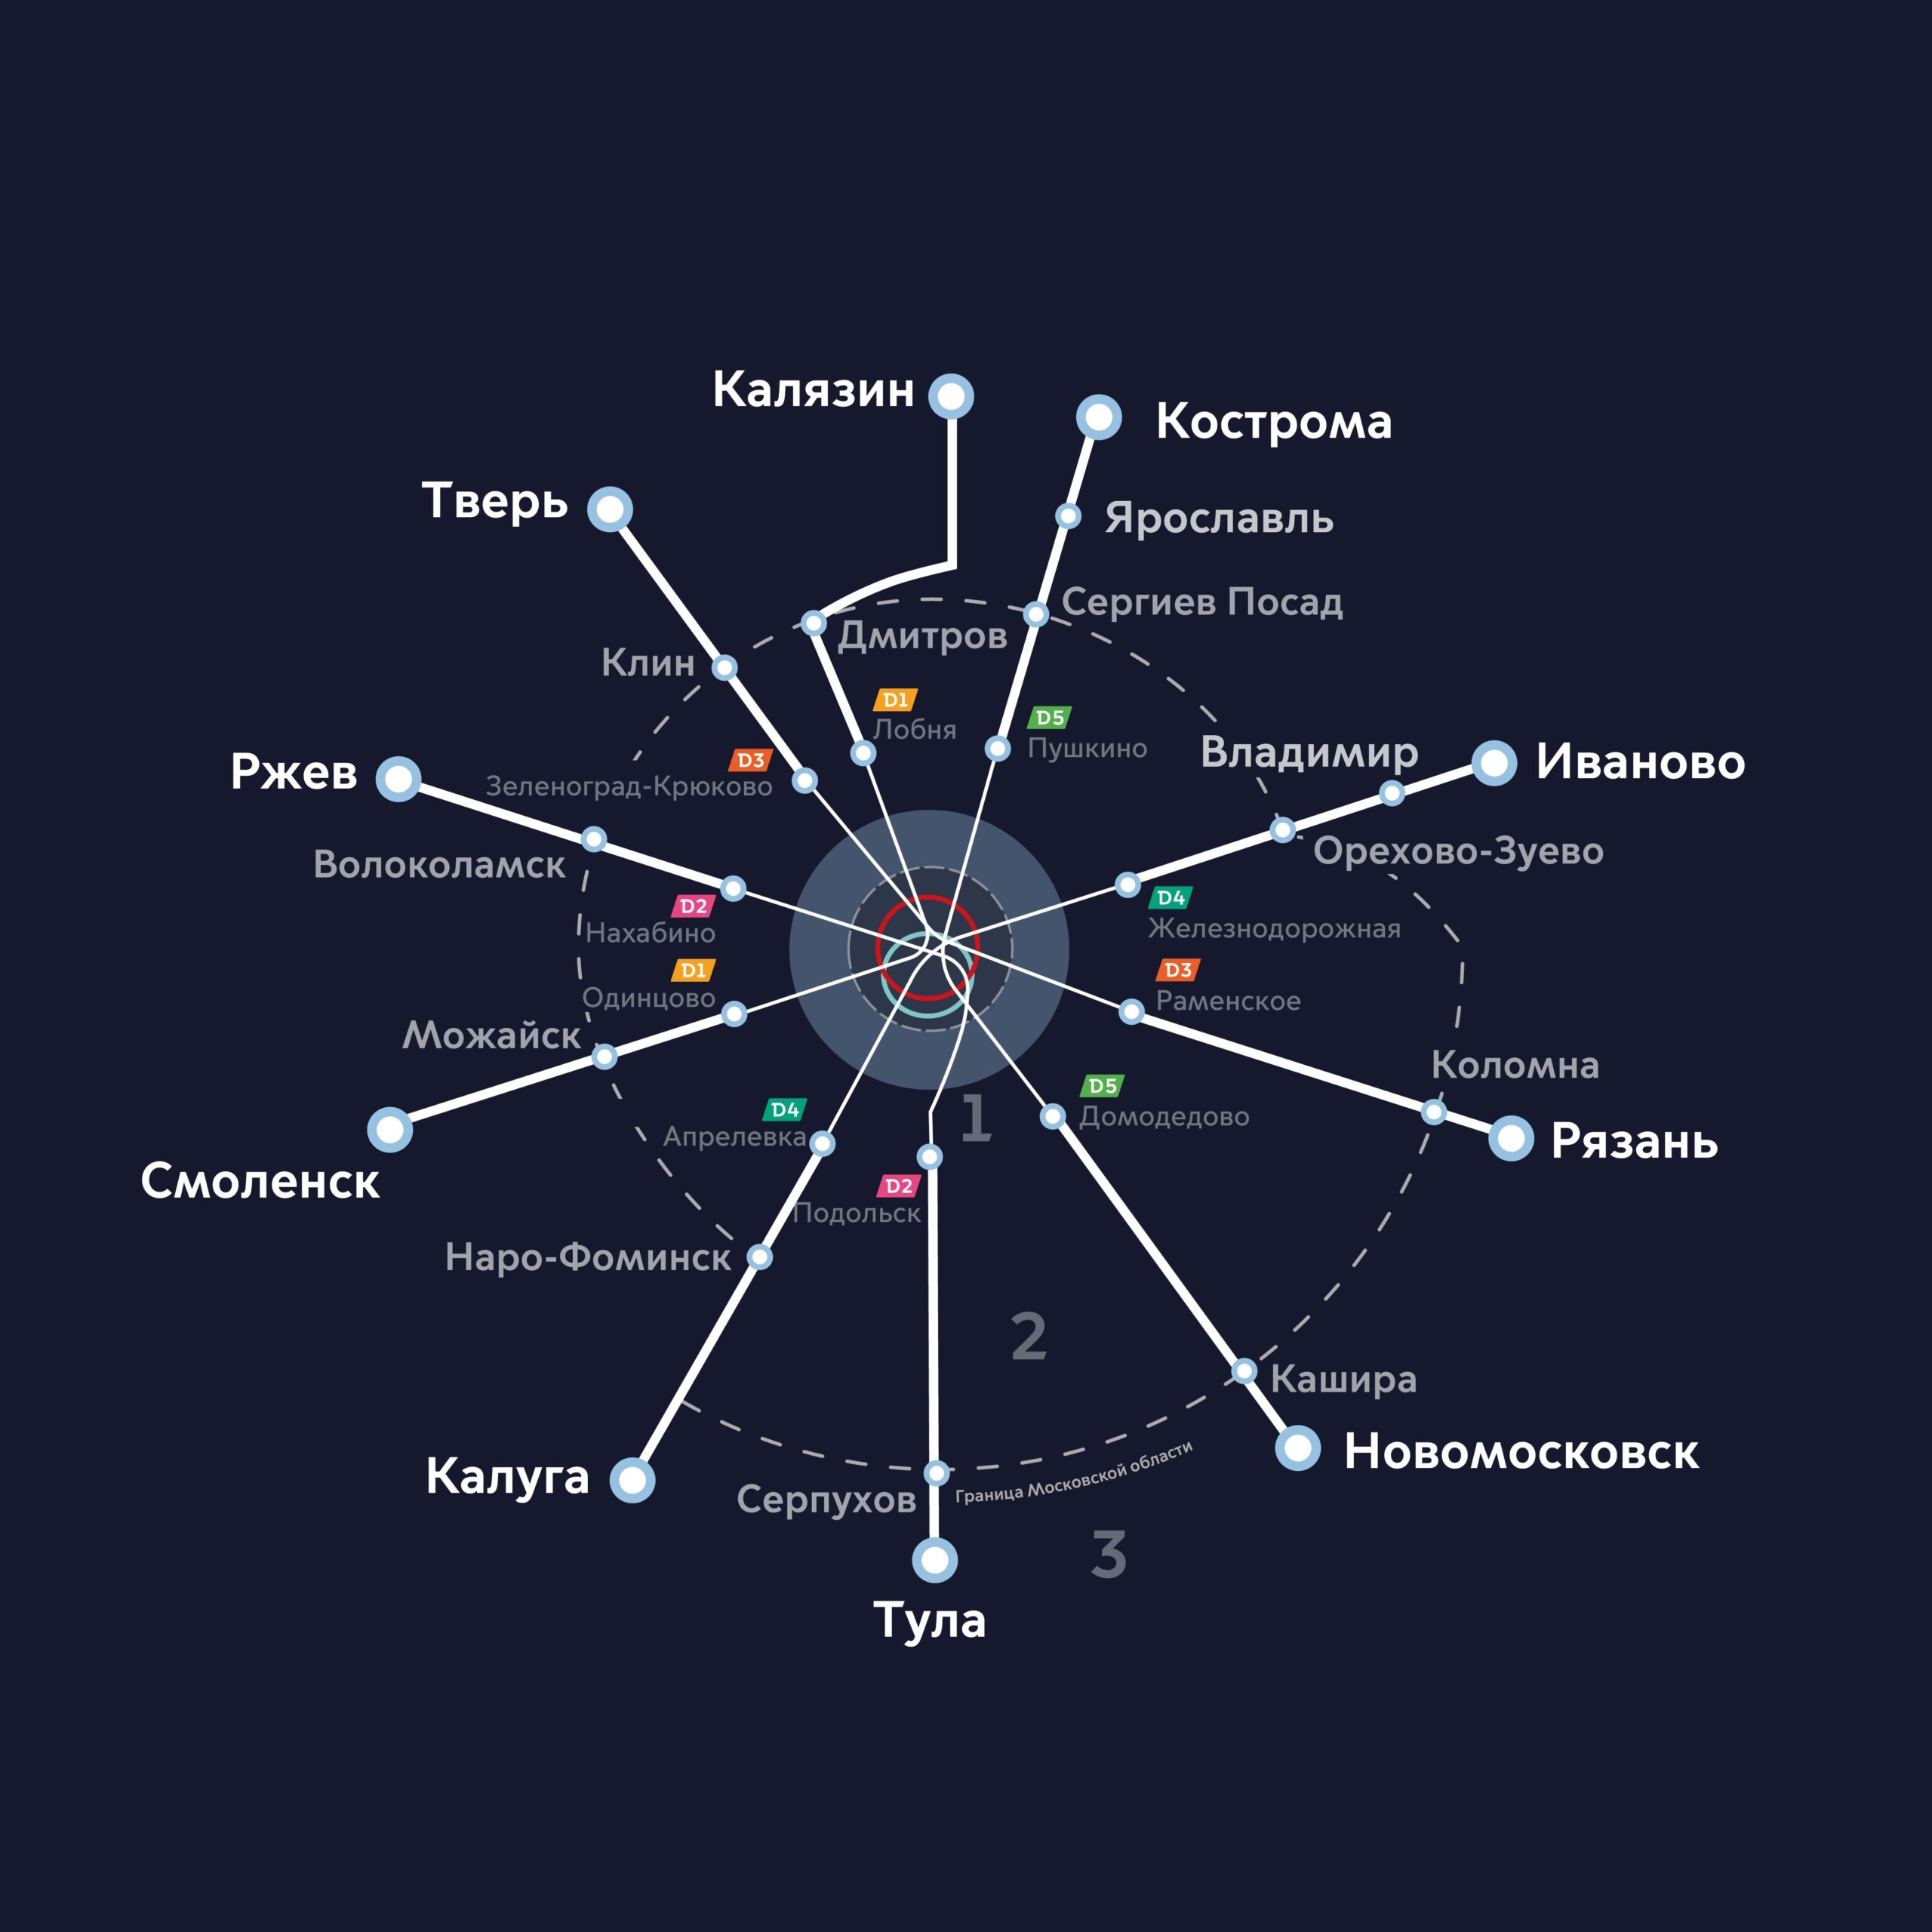 Впервые обнародована карта метро из Костромы в Москву